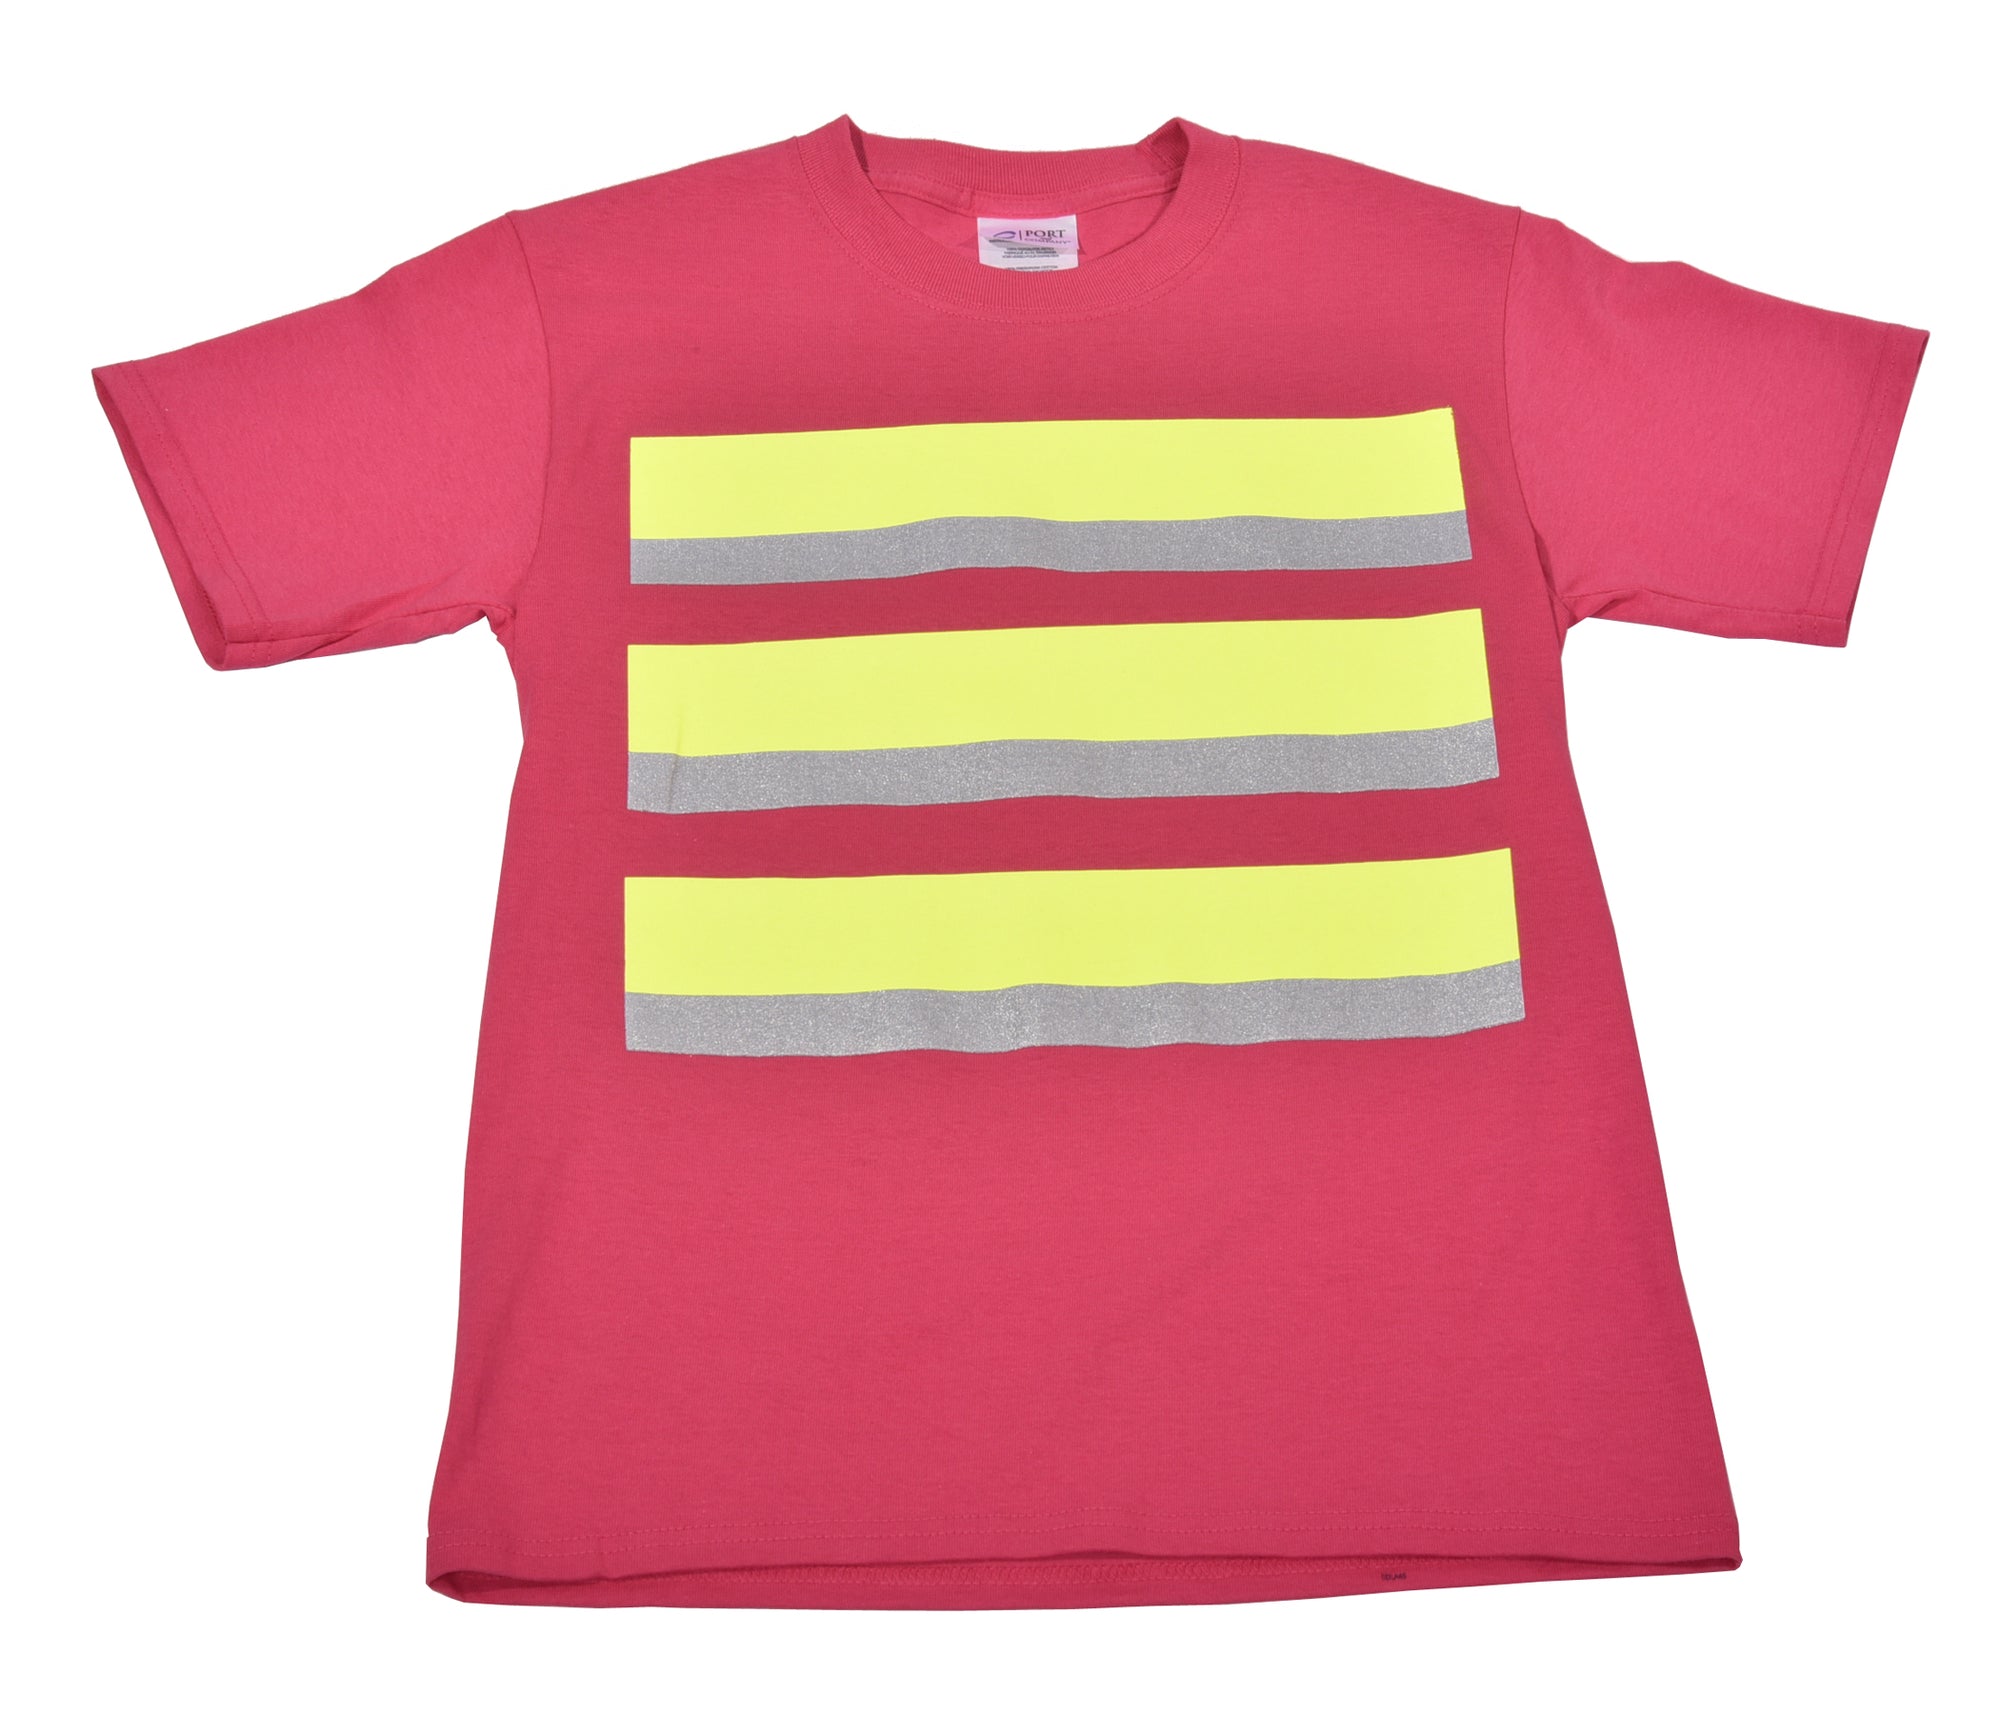 Whistle Workwear Kid's Safety T-Shirt - Work World - Workwear, Work Boots, Safety Gear